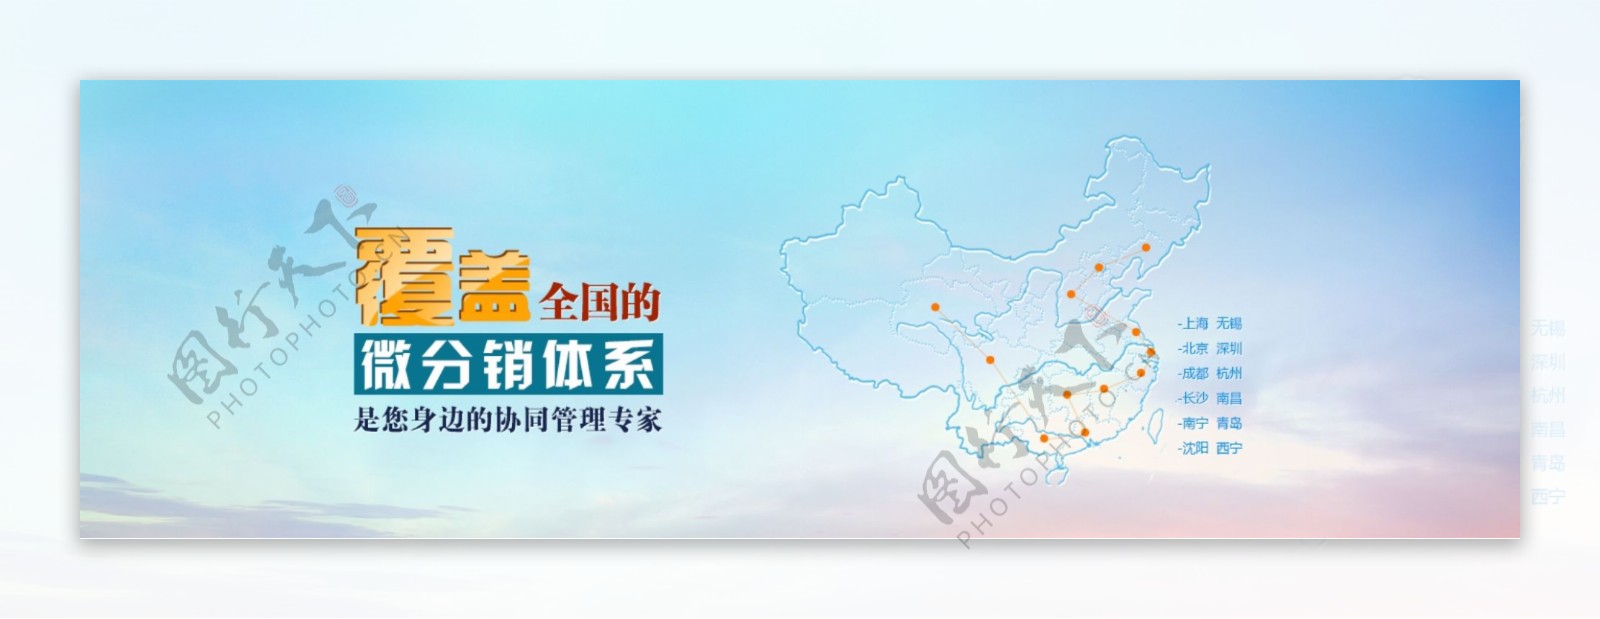 集团网站banner